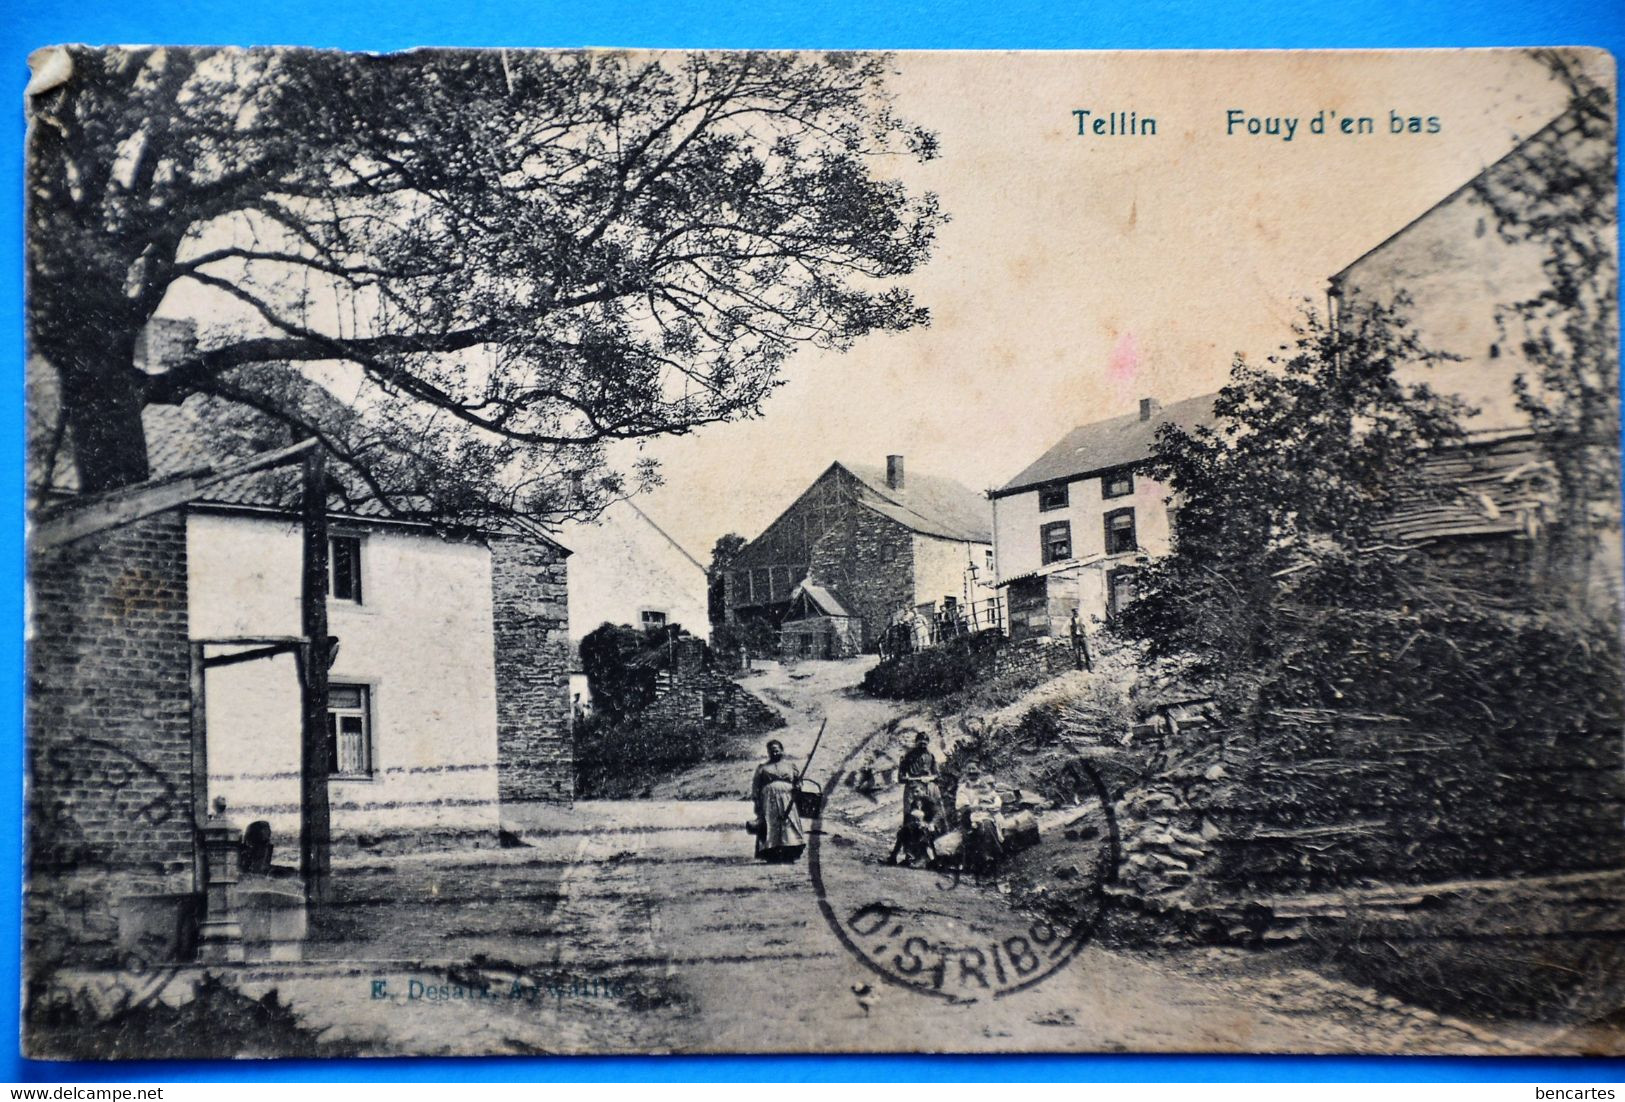 Tellin 1912: Le Fouy D'en Bas - Tellin